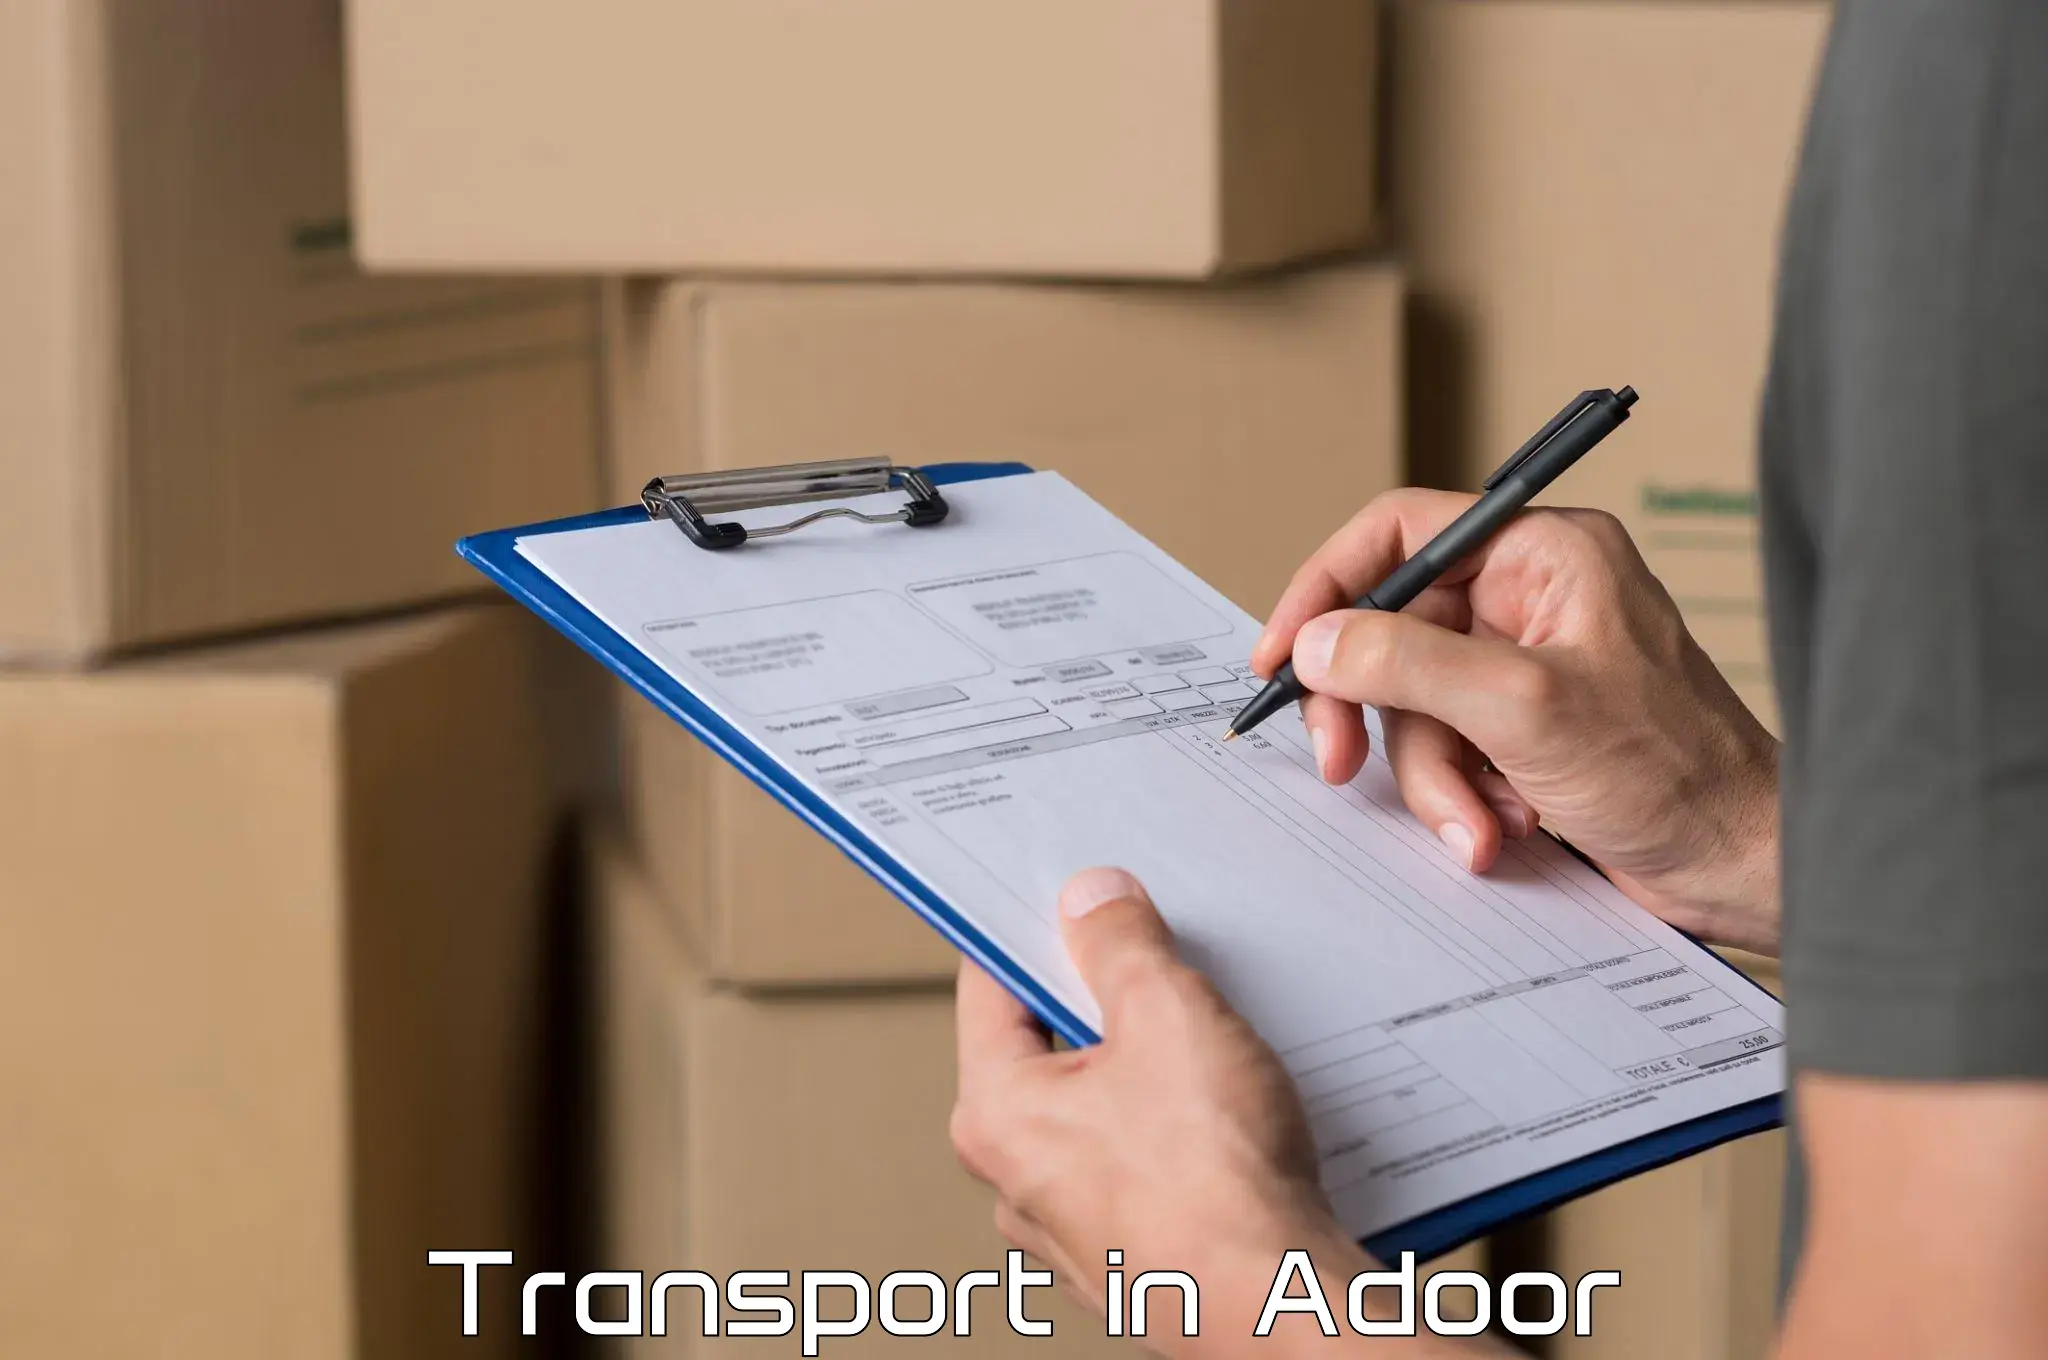 Road transport online services in Adoor